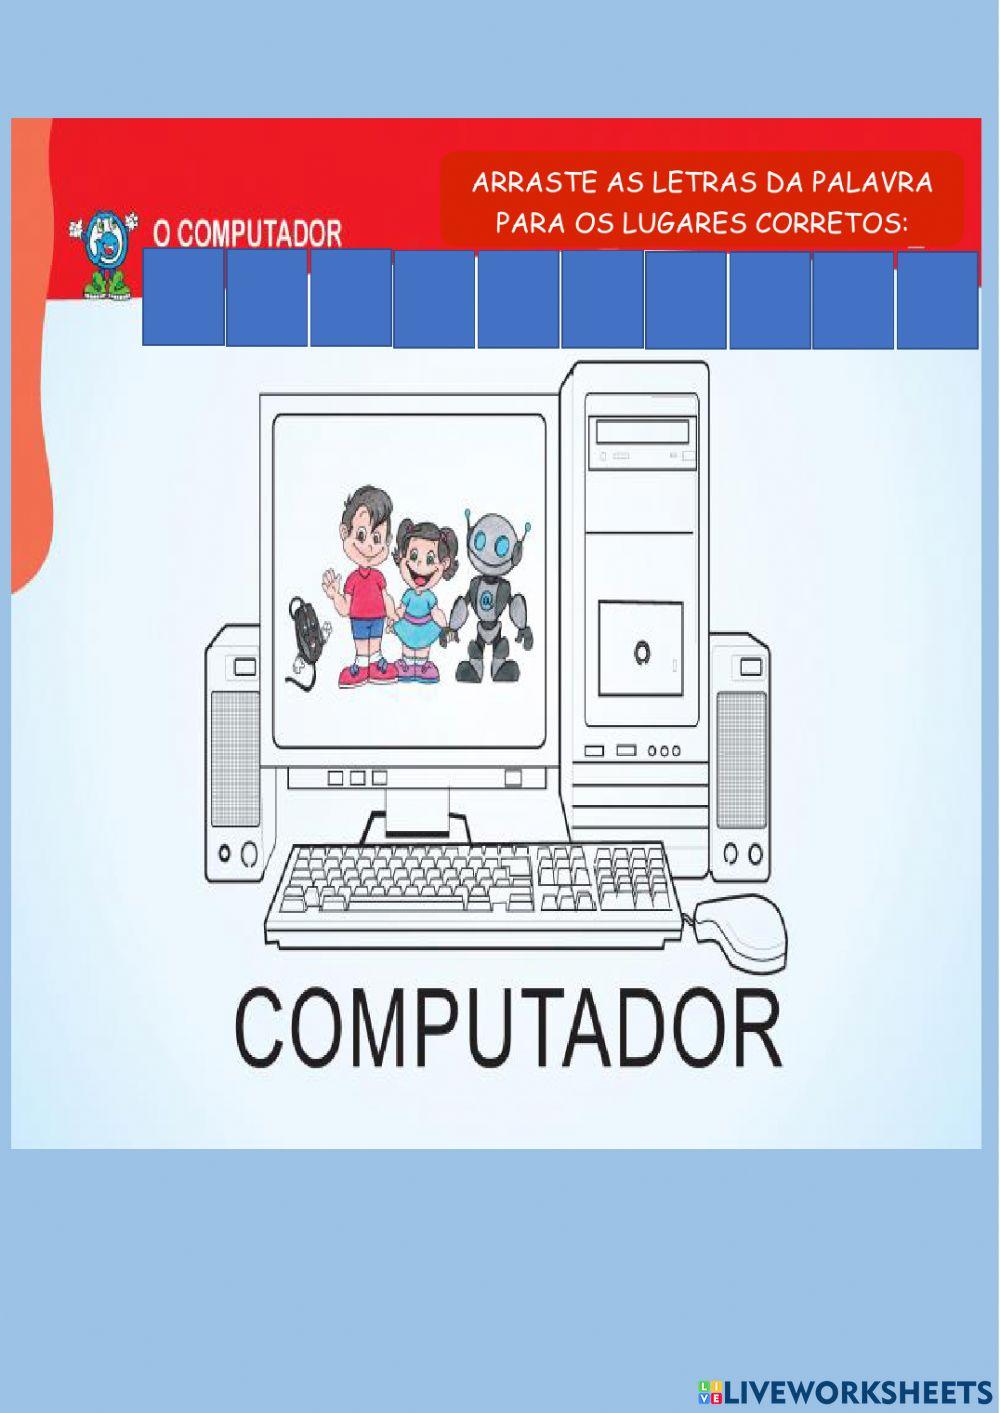 O computador